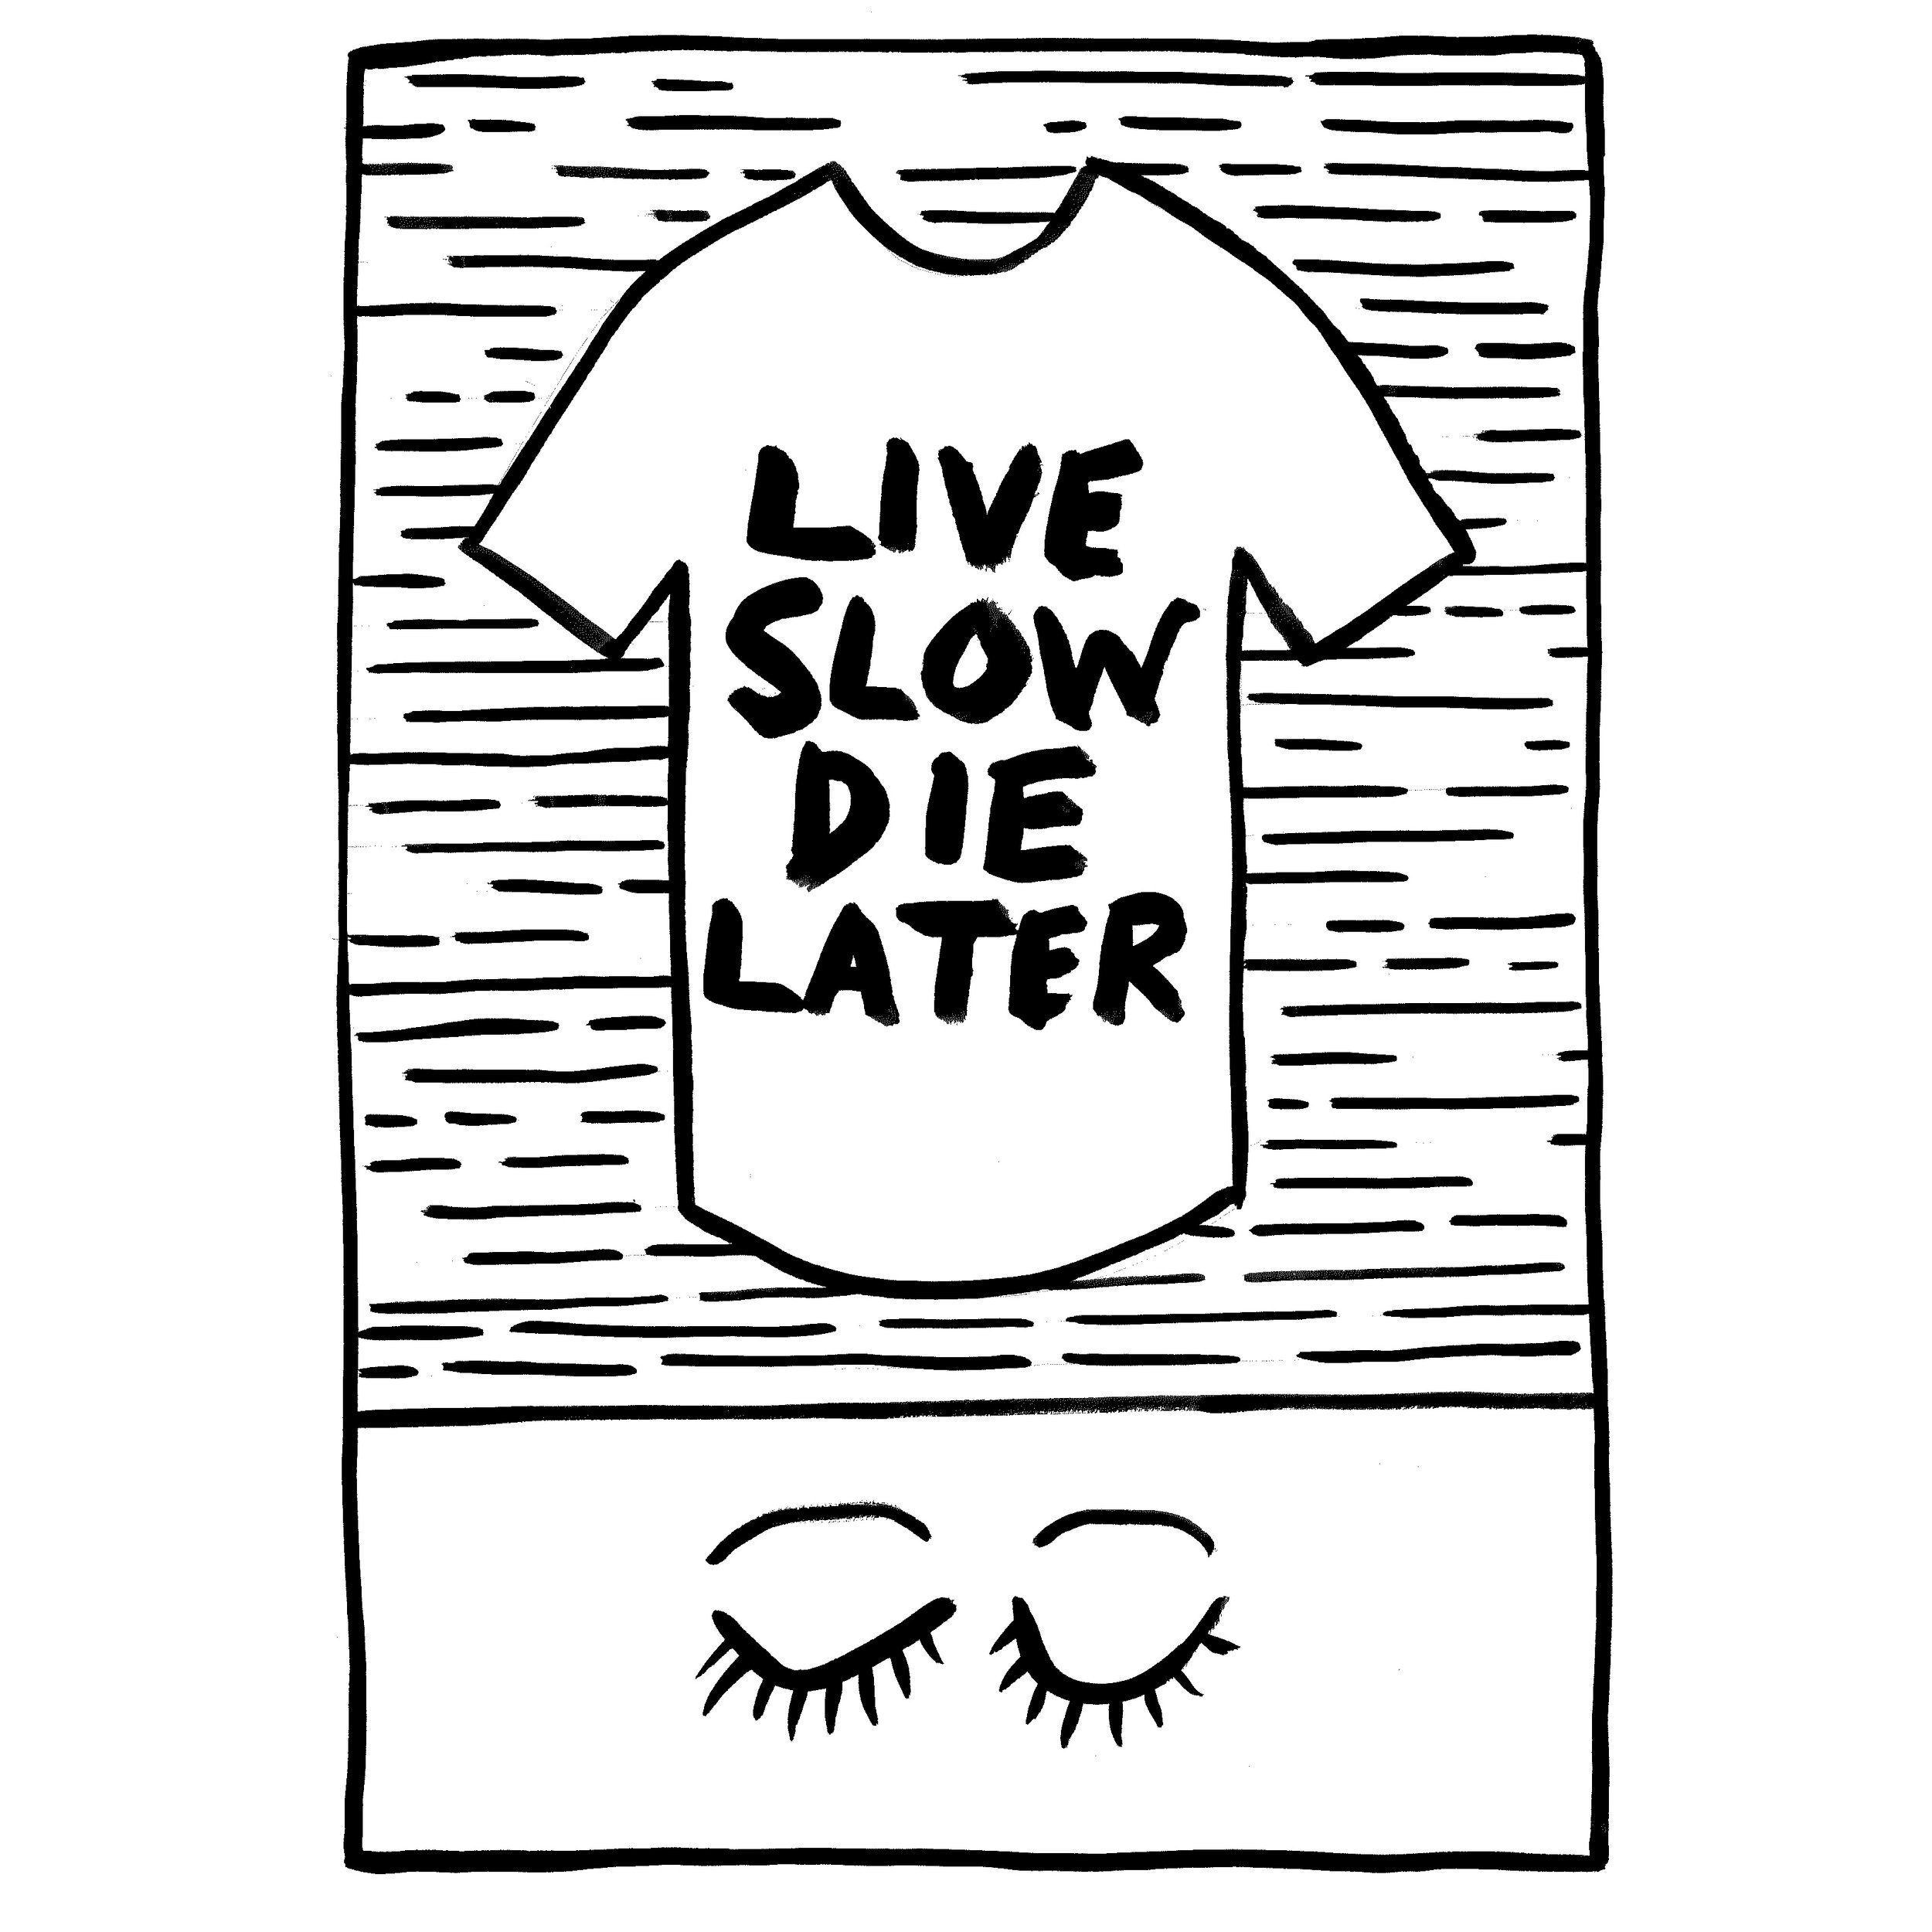 Live Slow Die Later.jpg